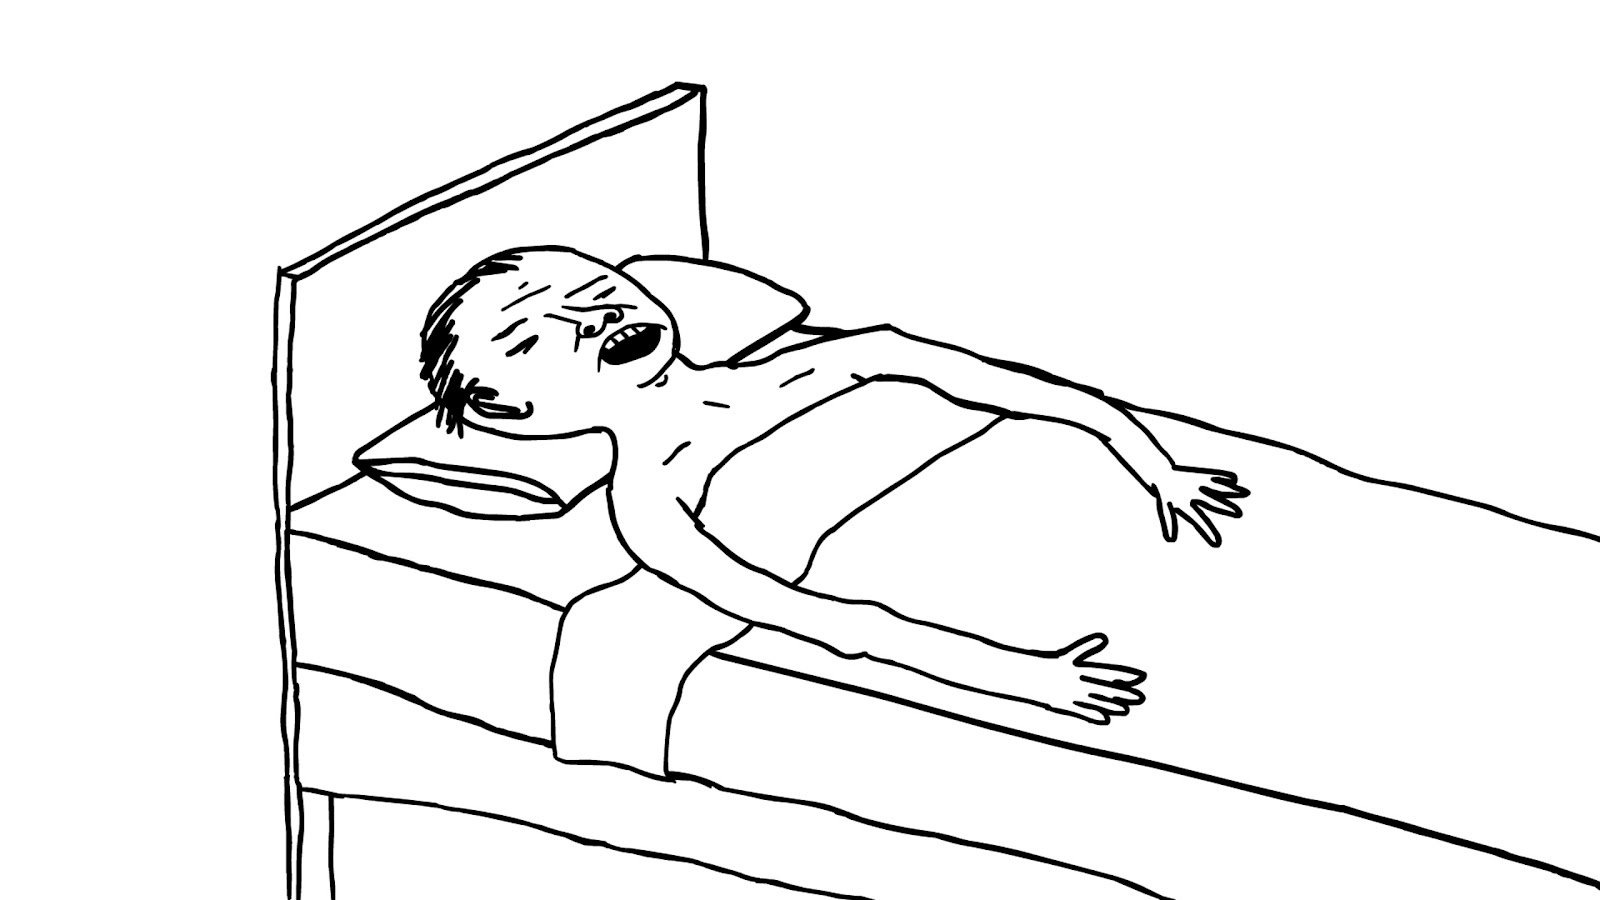 Пока спал на пляже. Человек в кровати рисунок. Человек лежит на кровати рисунок. Нарисовать чела на кровати.